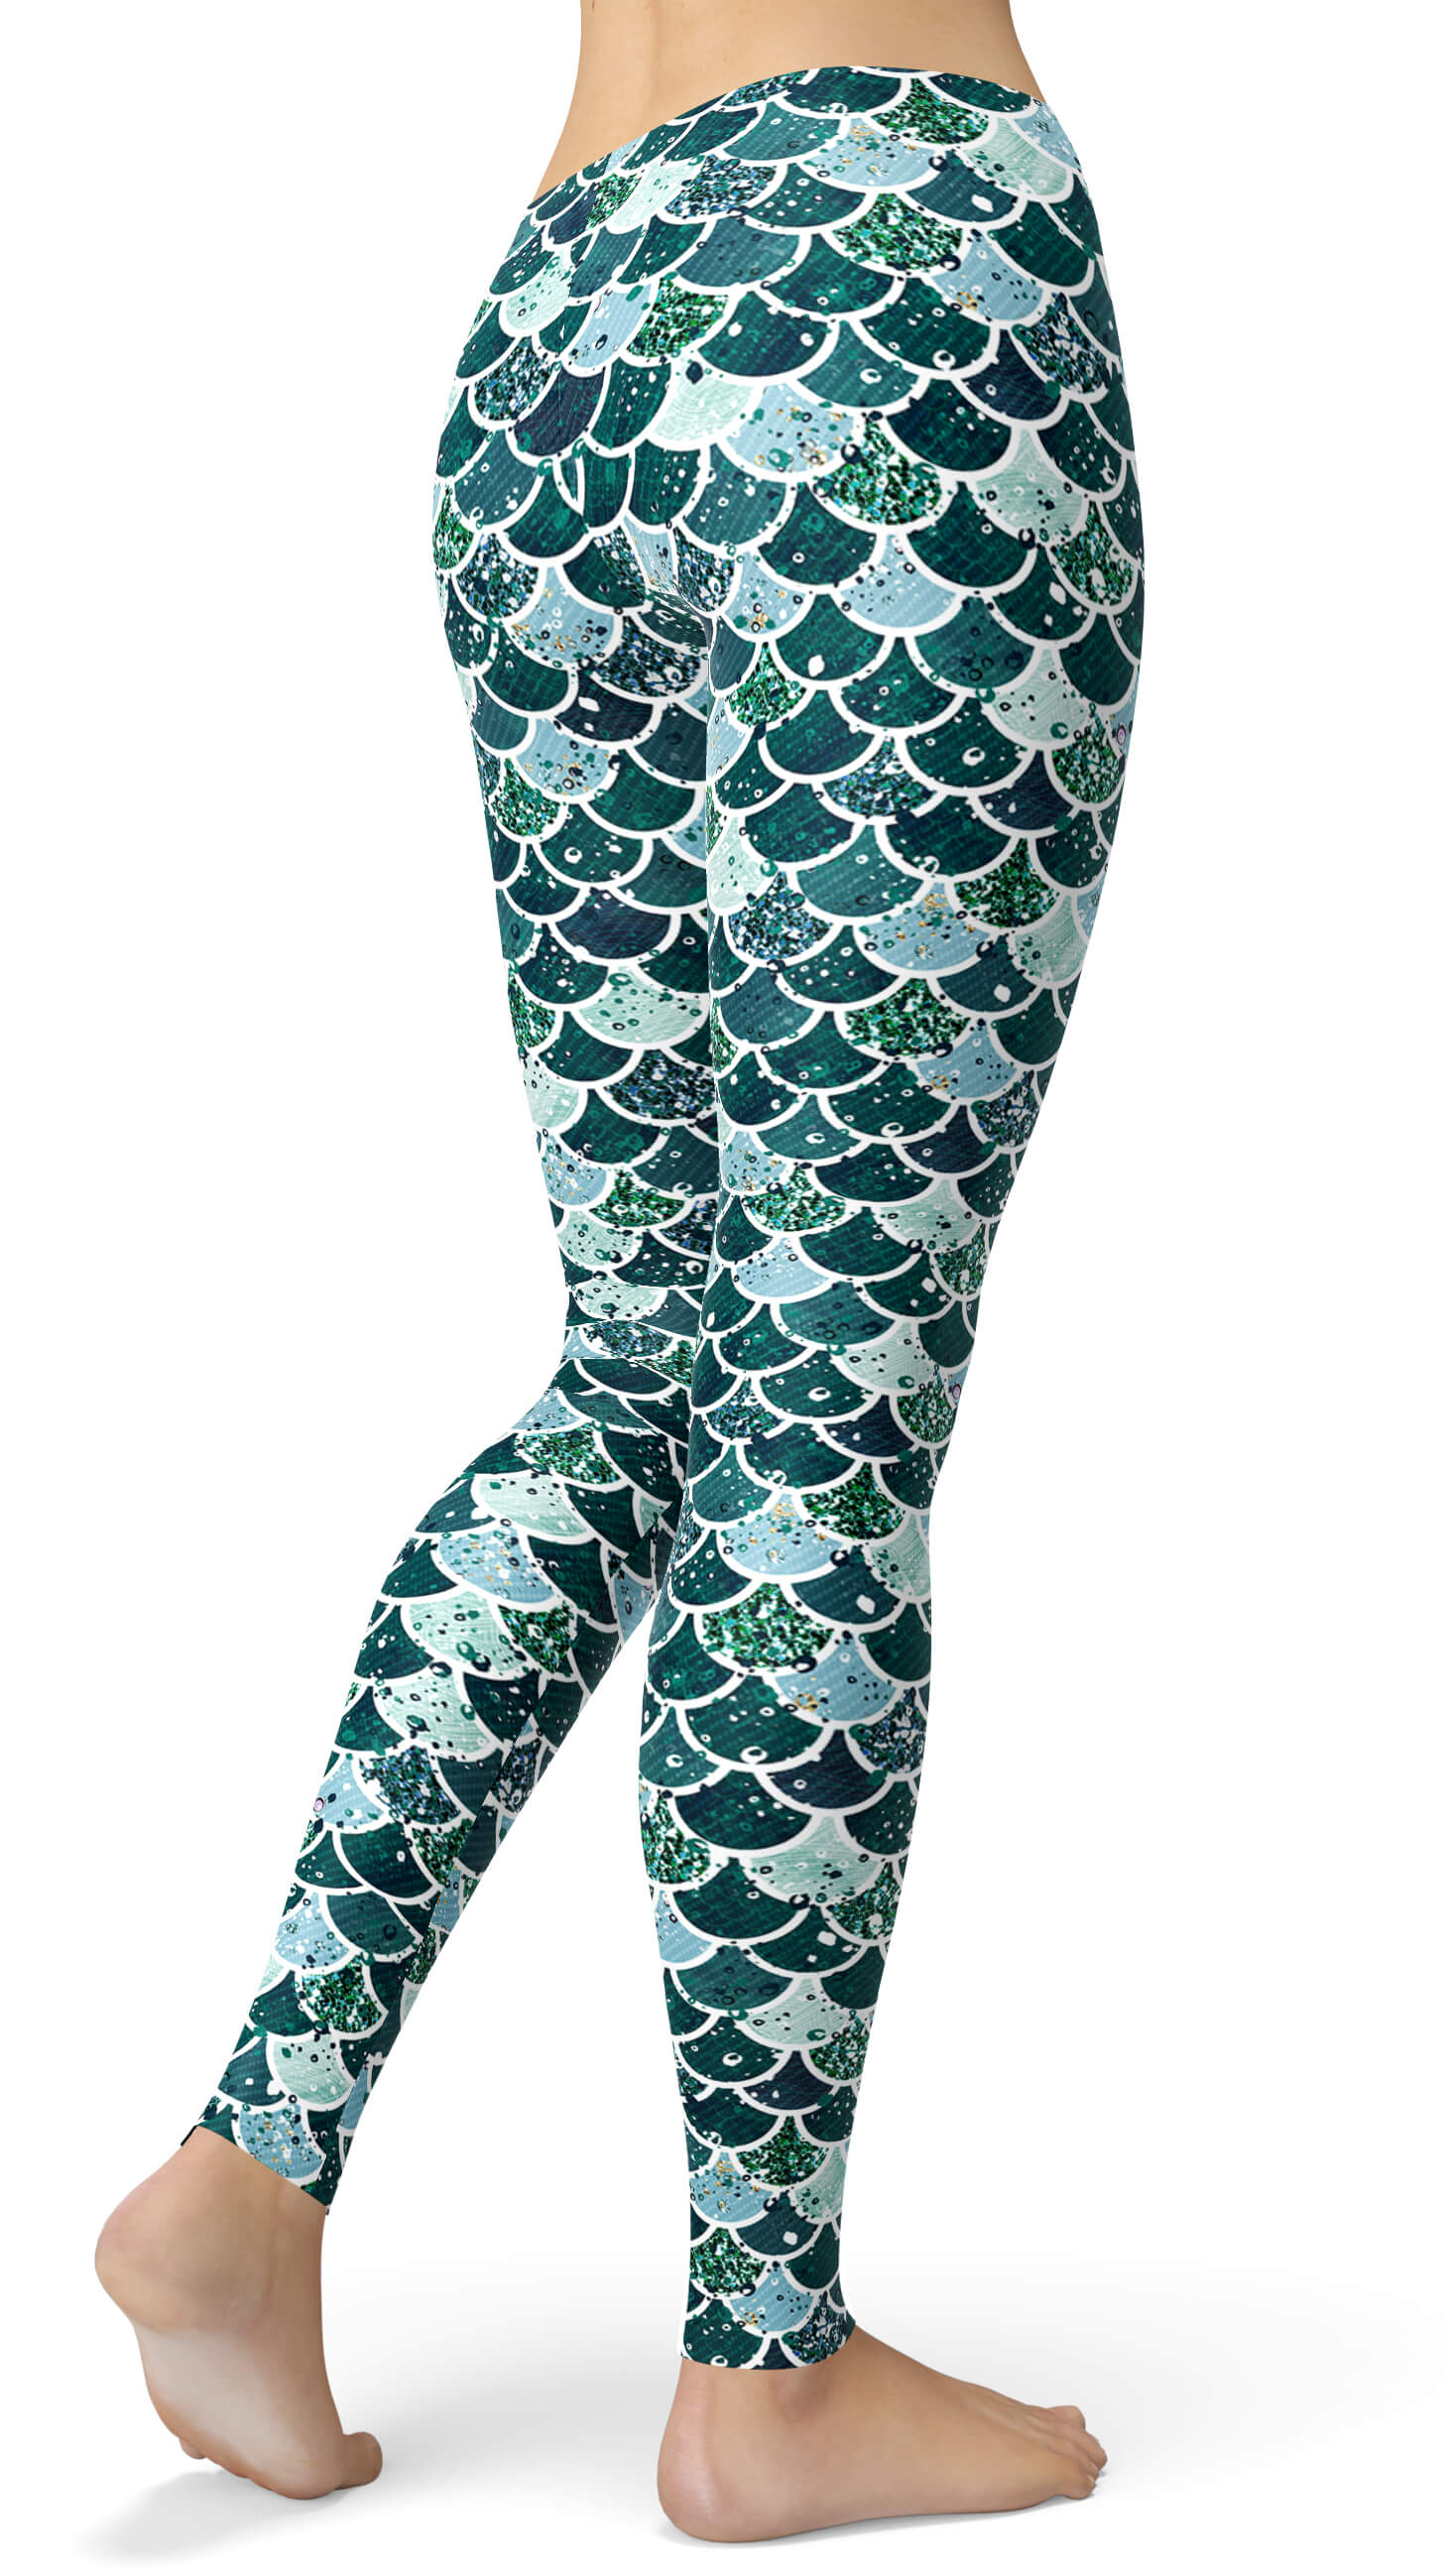 mermaid athletic leggings